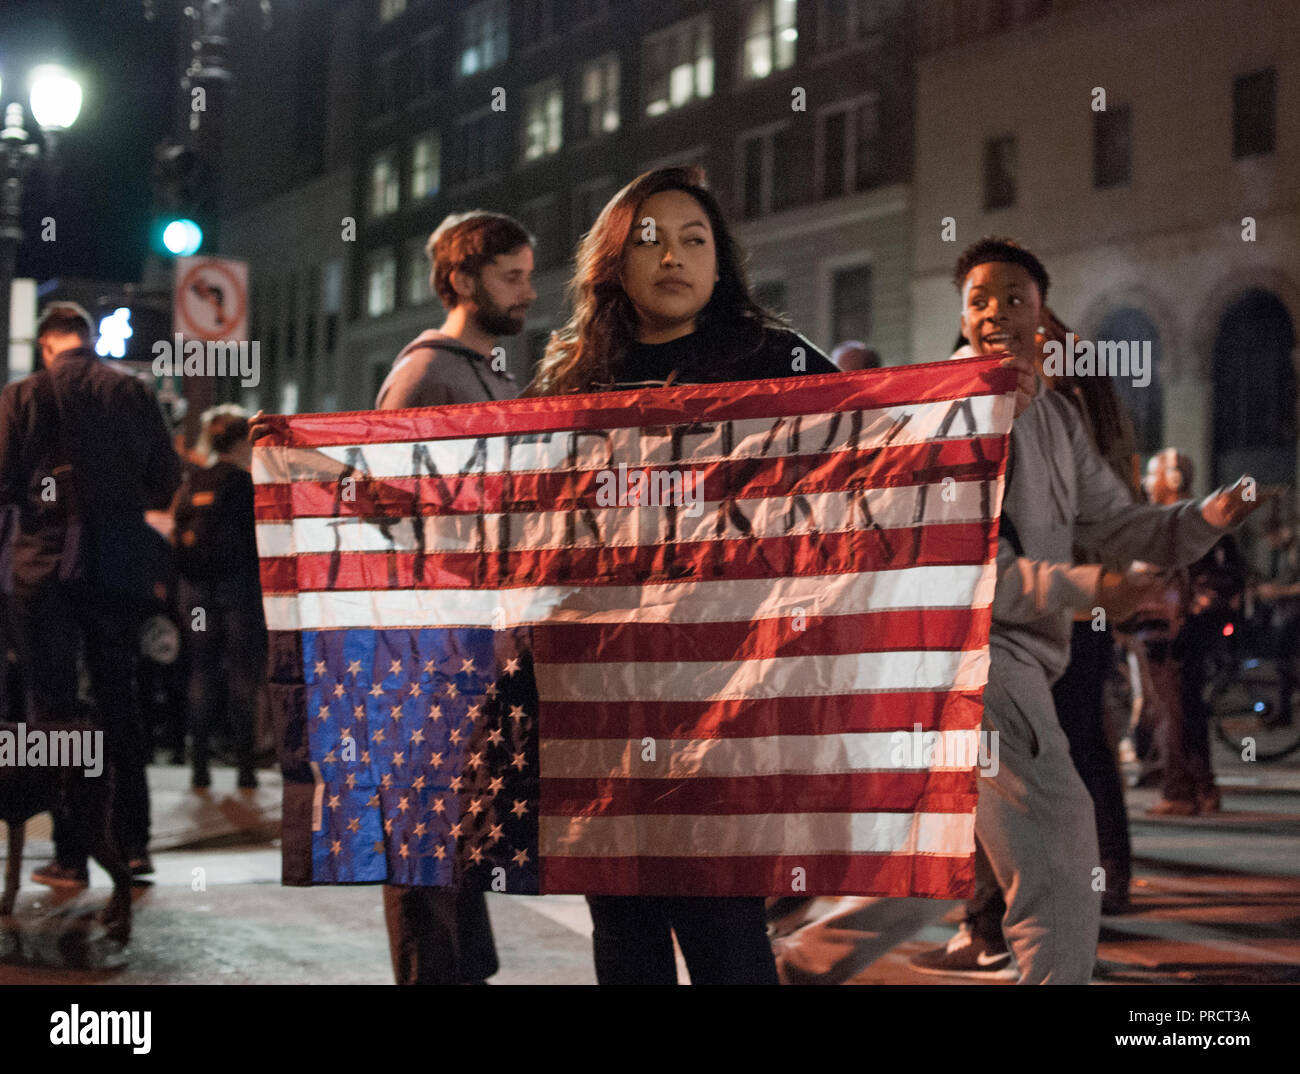 Eine Frau trägt eine upside-down American Flag Lesung" AmeriKKKa' während der Proteste in Oakland gegen die Wahl von Donald Trump am 9. November 2016. Stockfoto